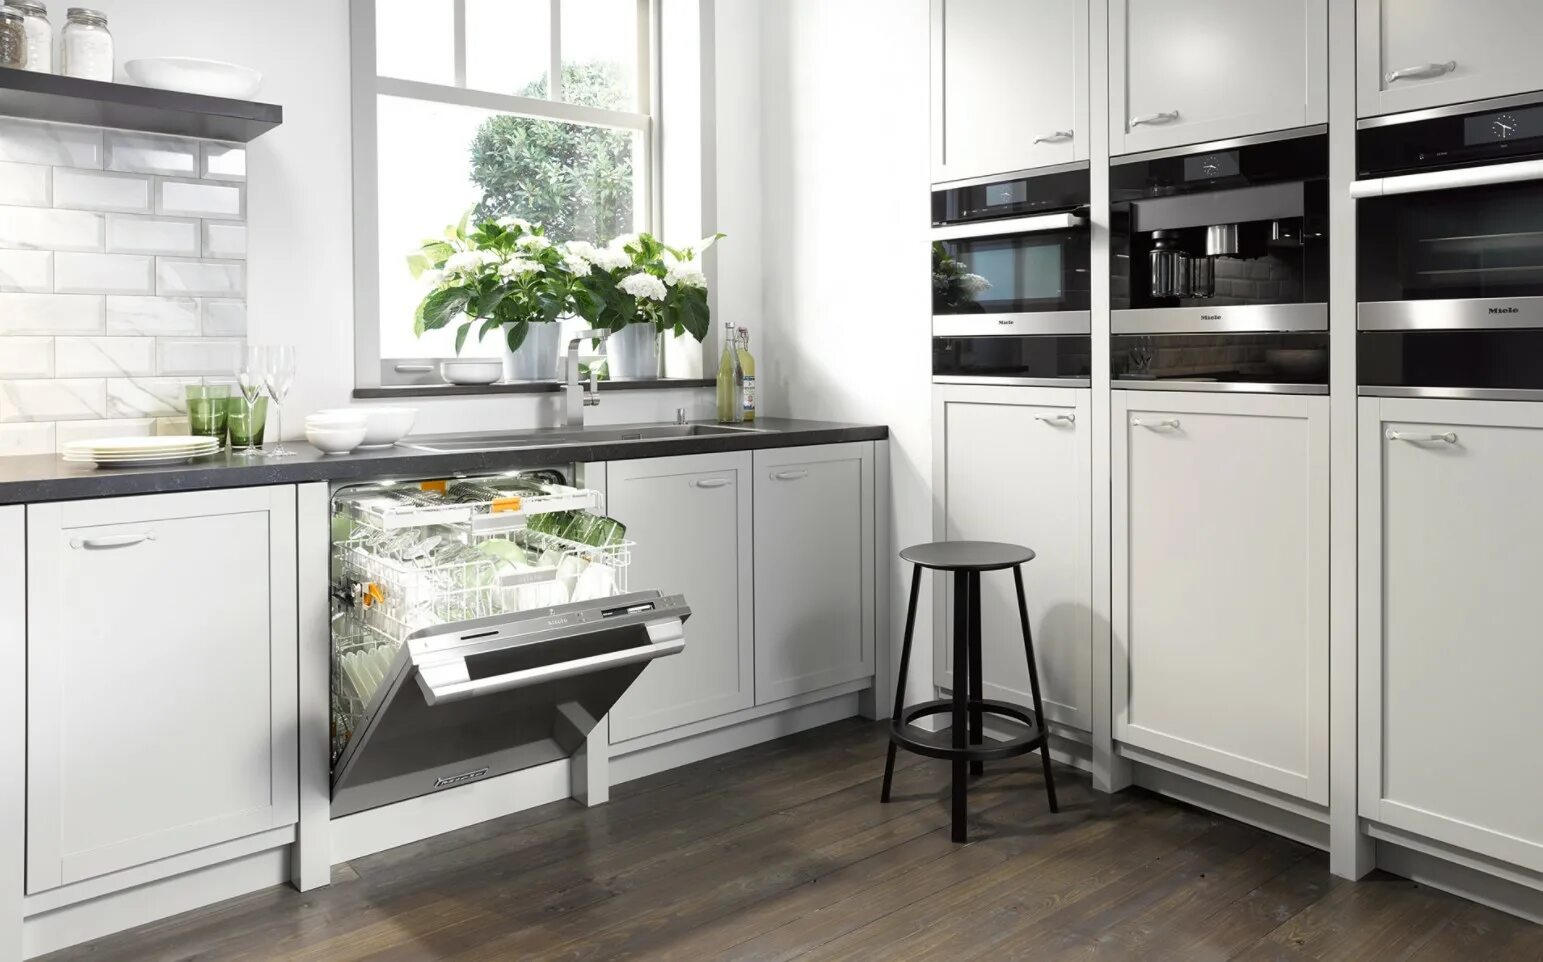 Miele g5210. Посудомойка в интерьере кухни. Посудомоечная машина в интерьере. Посудомоечная машина на кухне.